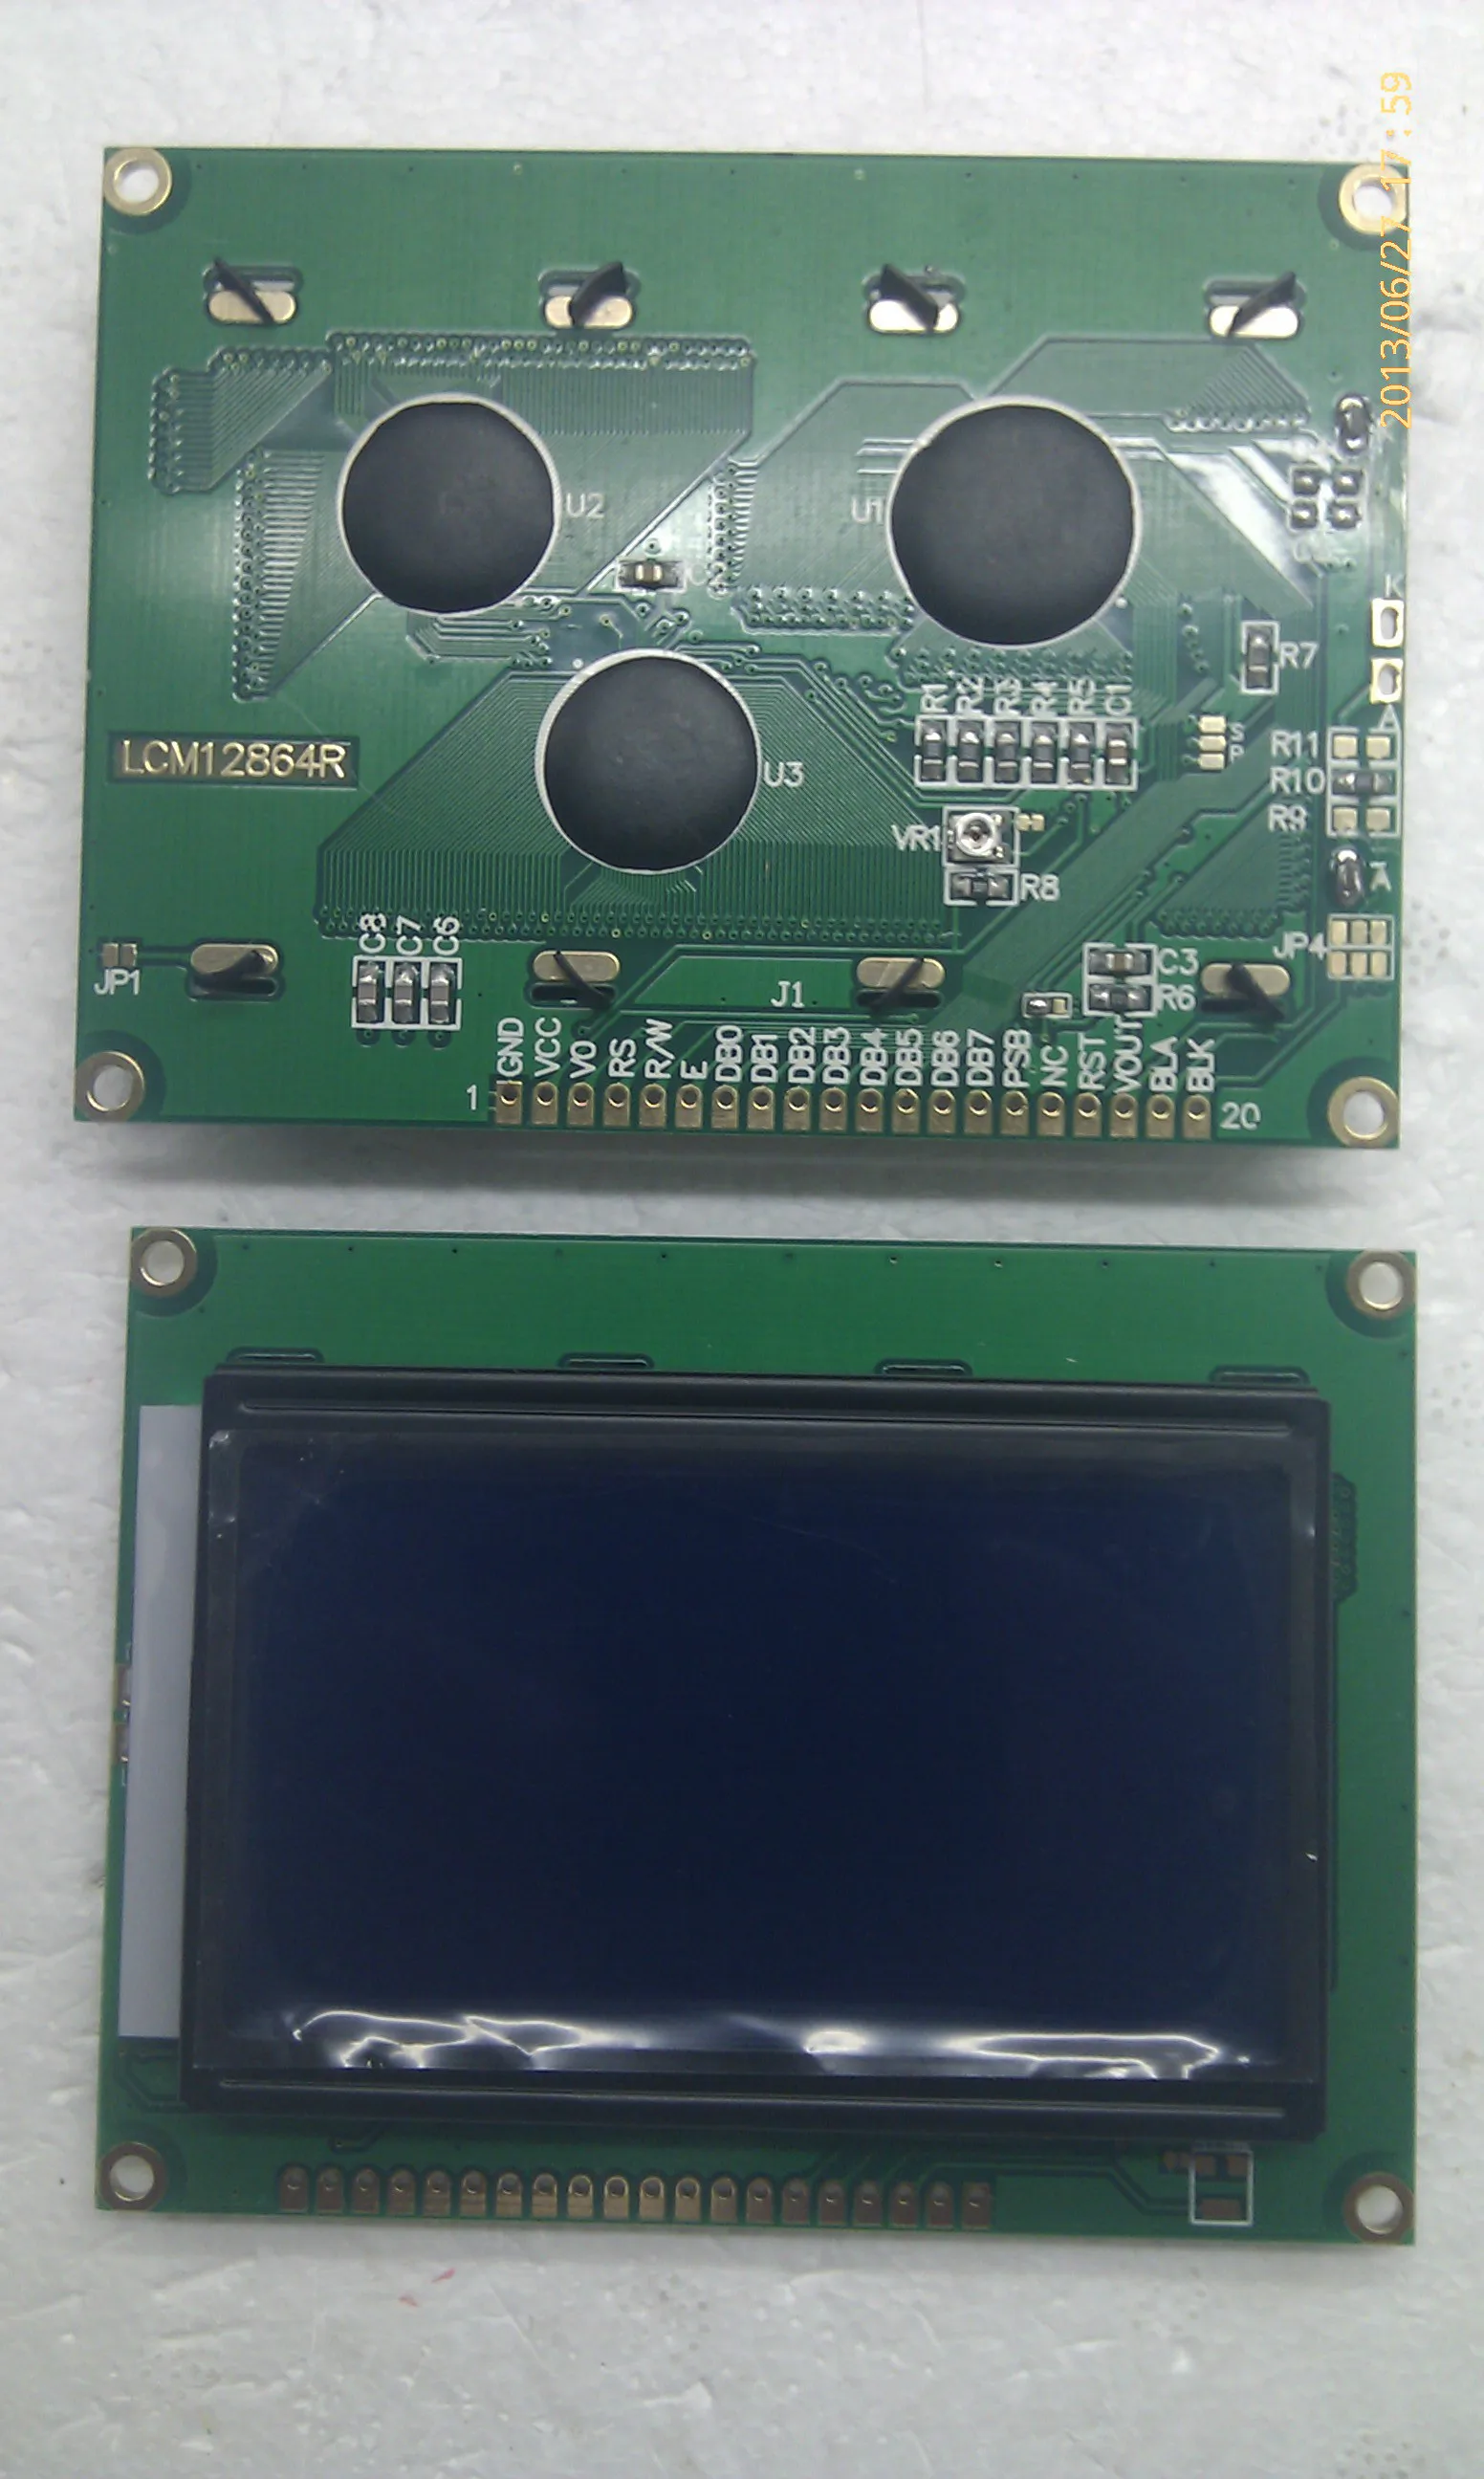 LCD12864 LCD ekran / LCD ekran modülü ST7920 yazı tipi kitaplığı mavi ve beyaz film . ' - ' . 4